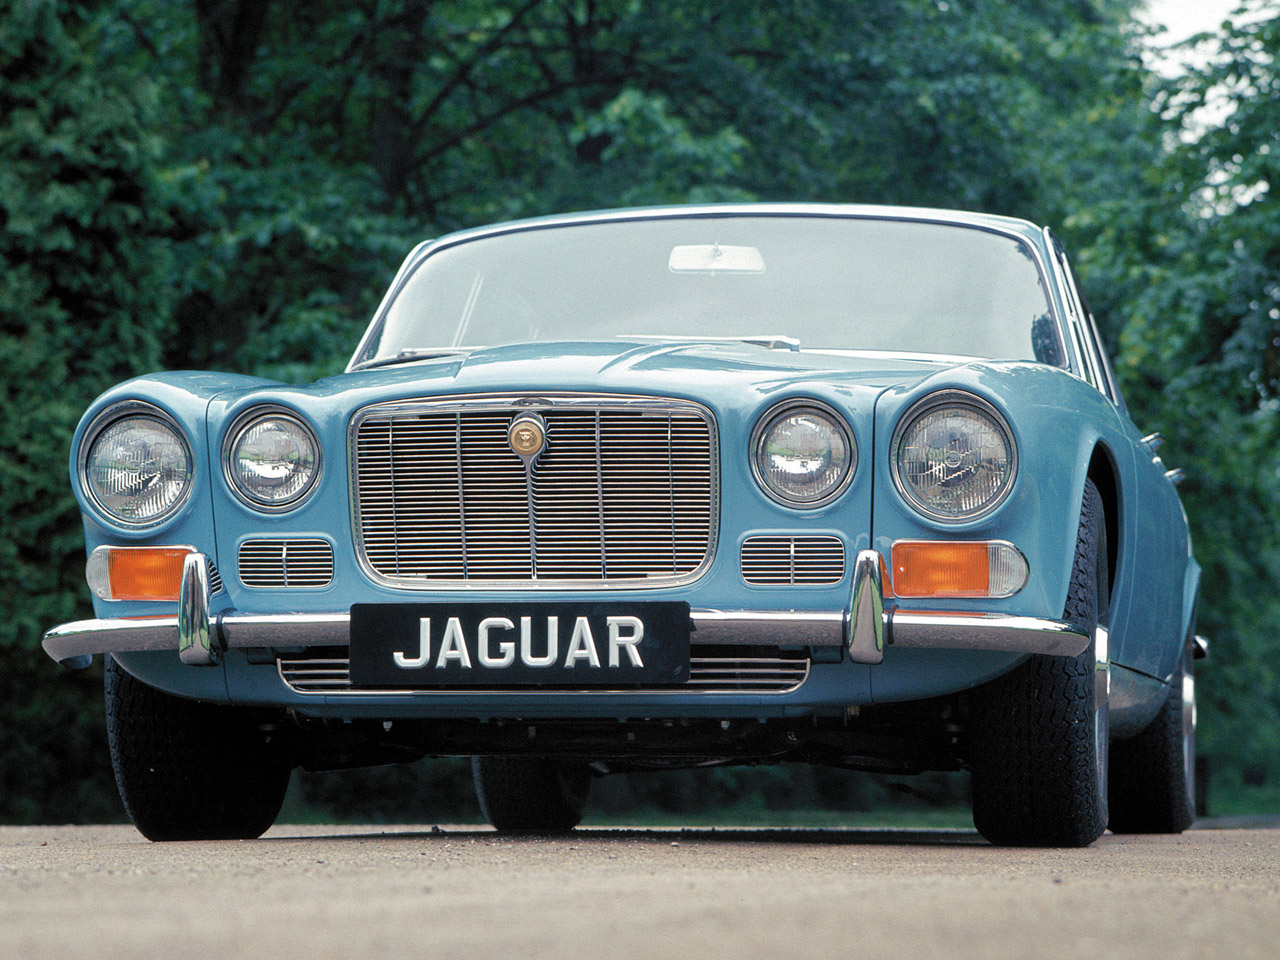 Jaguar XJ6 parts